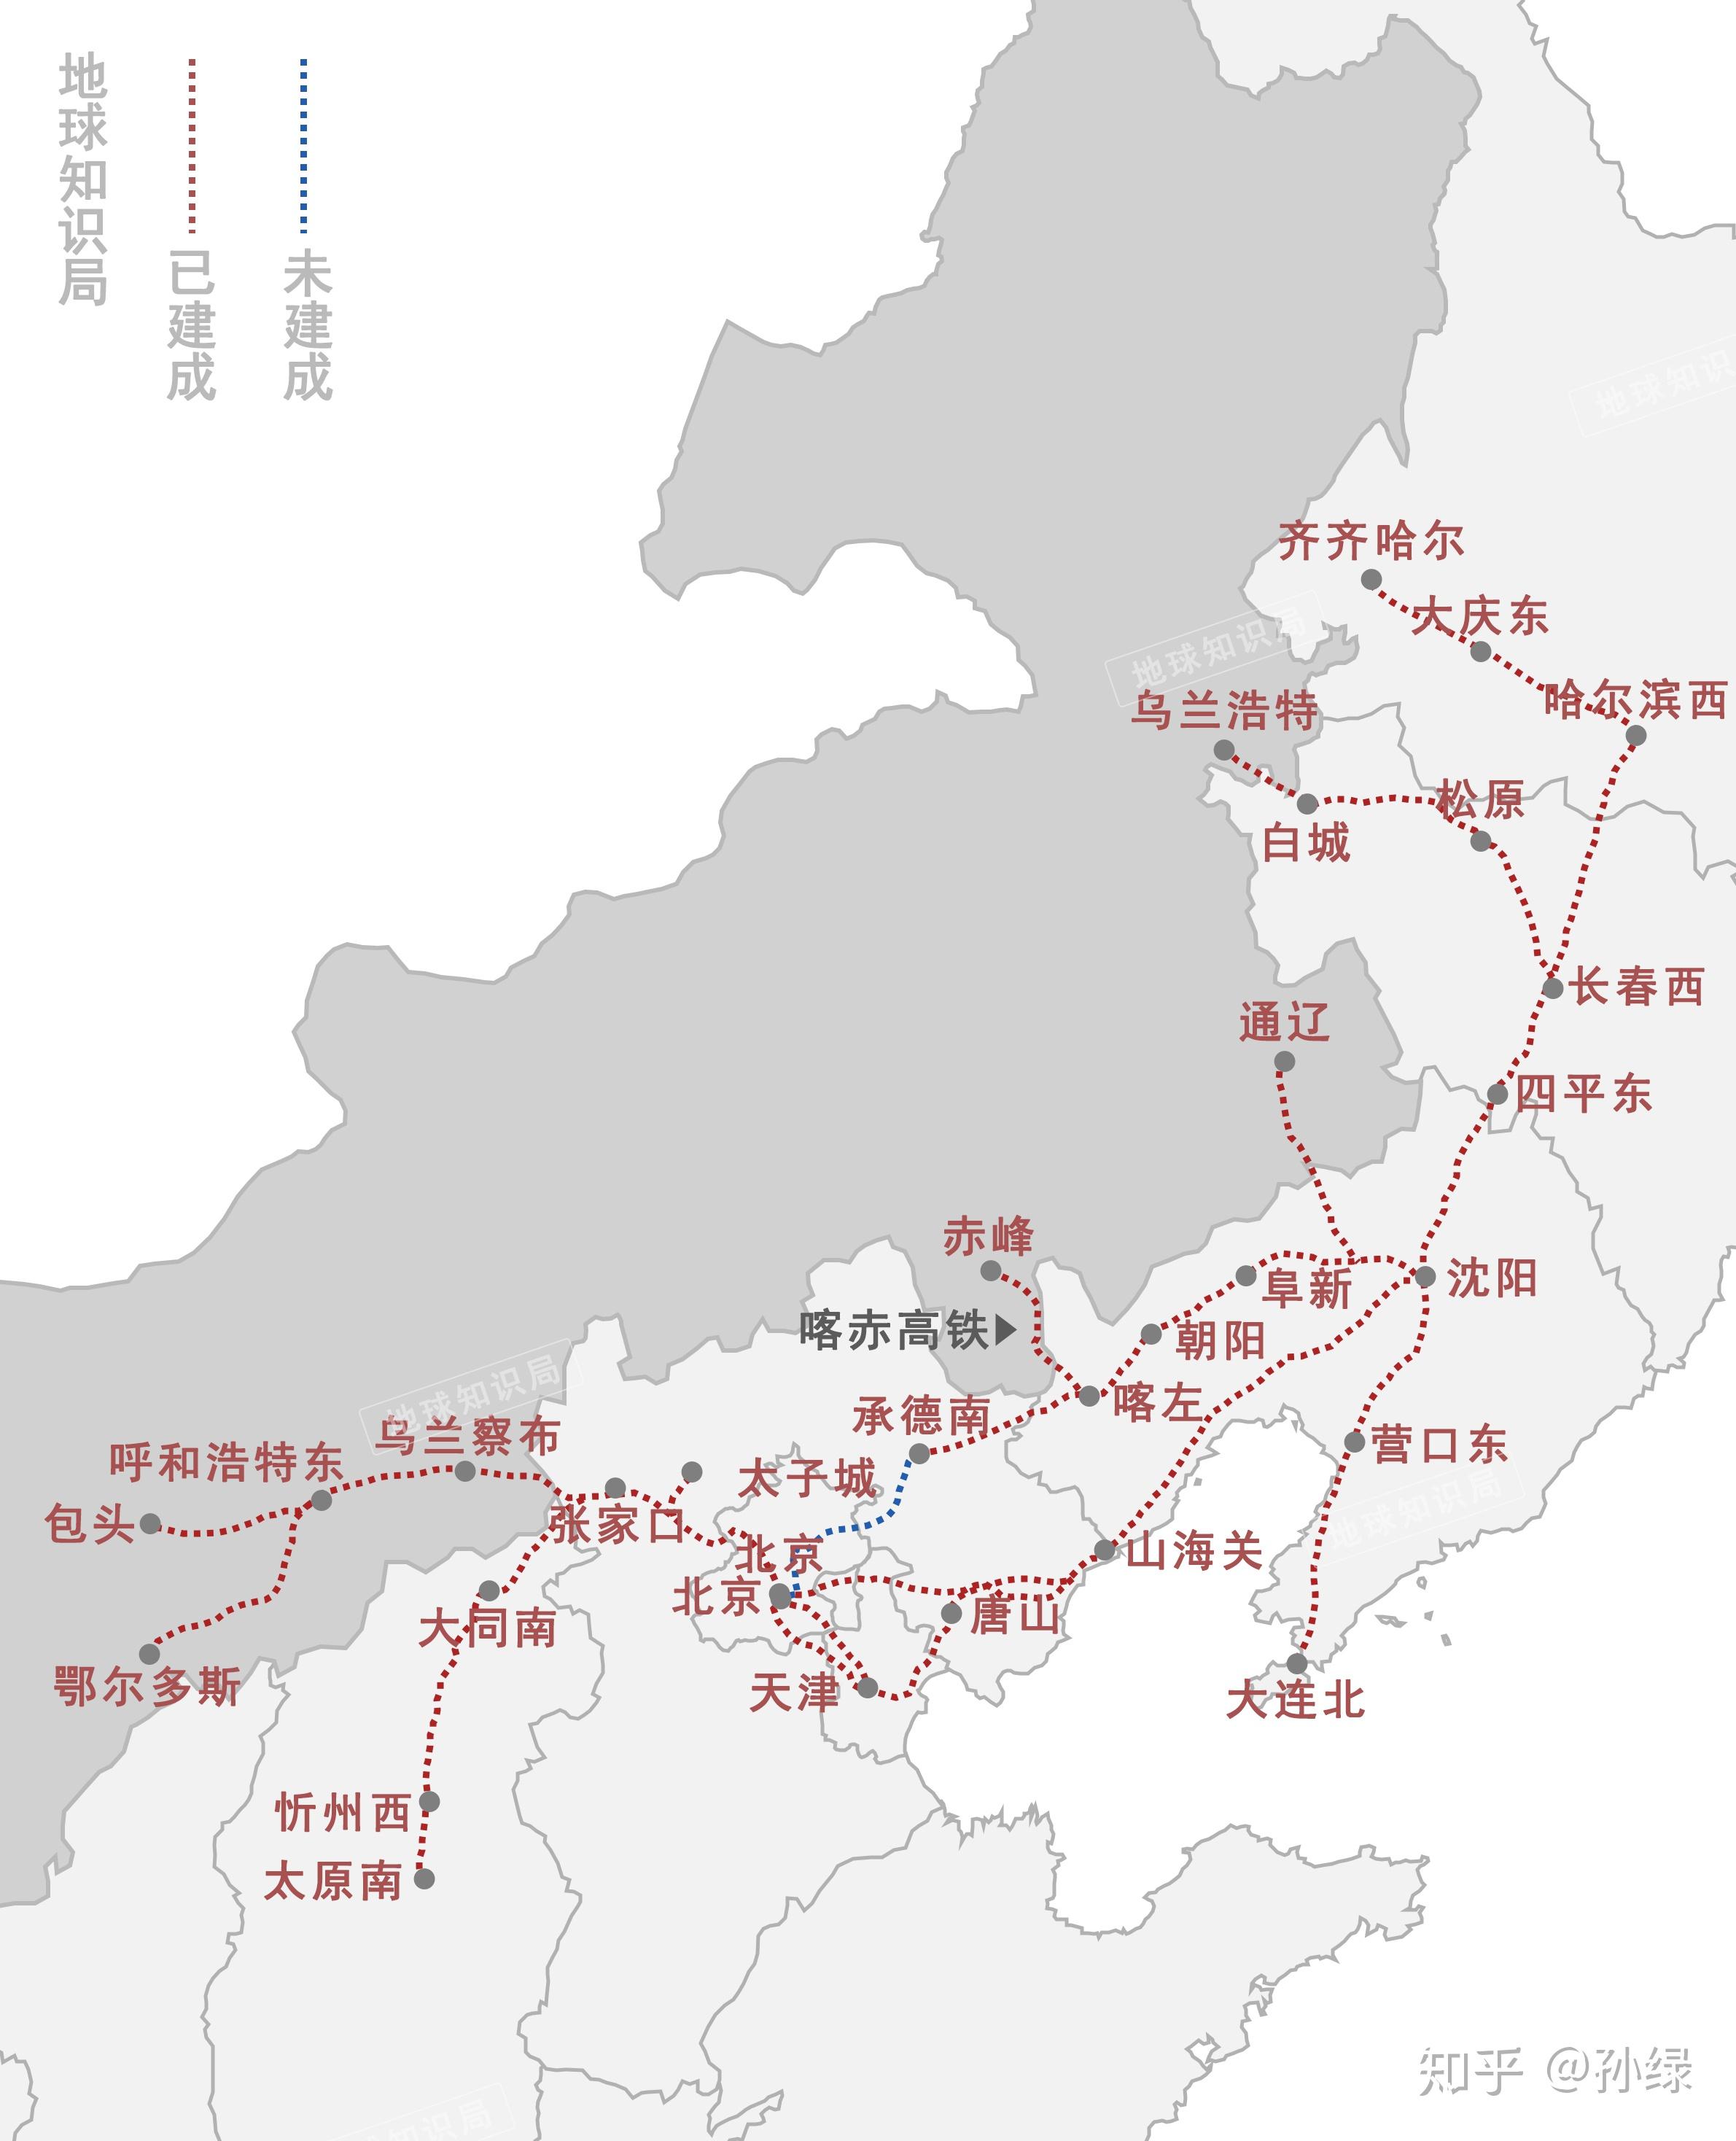 北京到赤峰高铁线路图图片